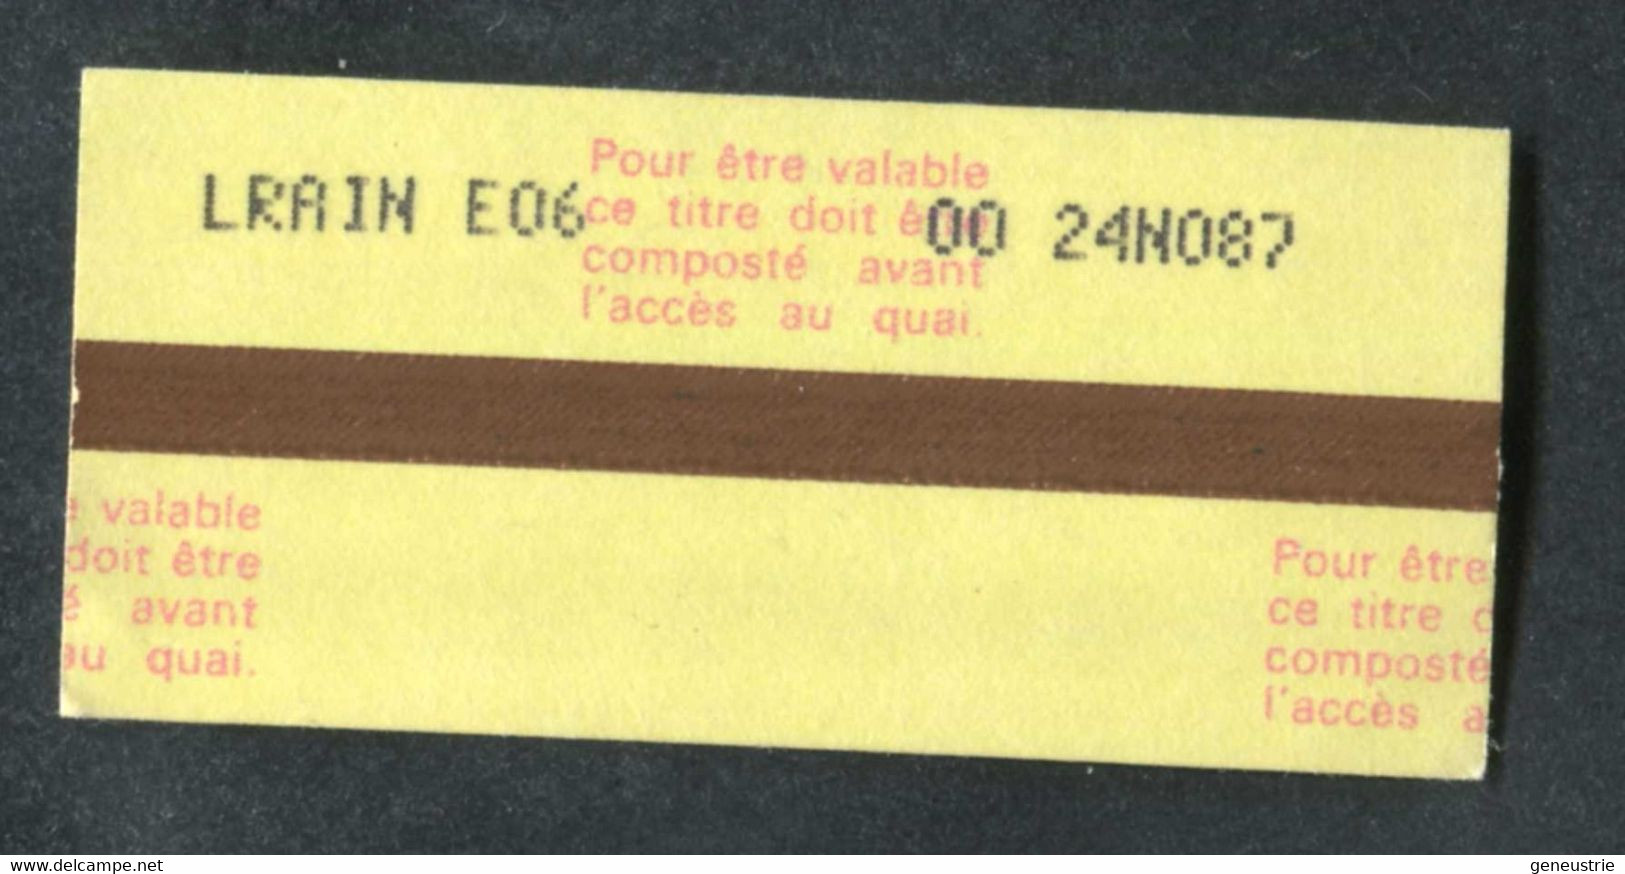 Ticket De Train SNCF Gare De Le Raincy 1987 "Contremarque De Passage" Train Ticket - Europe